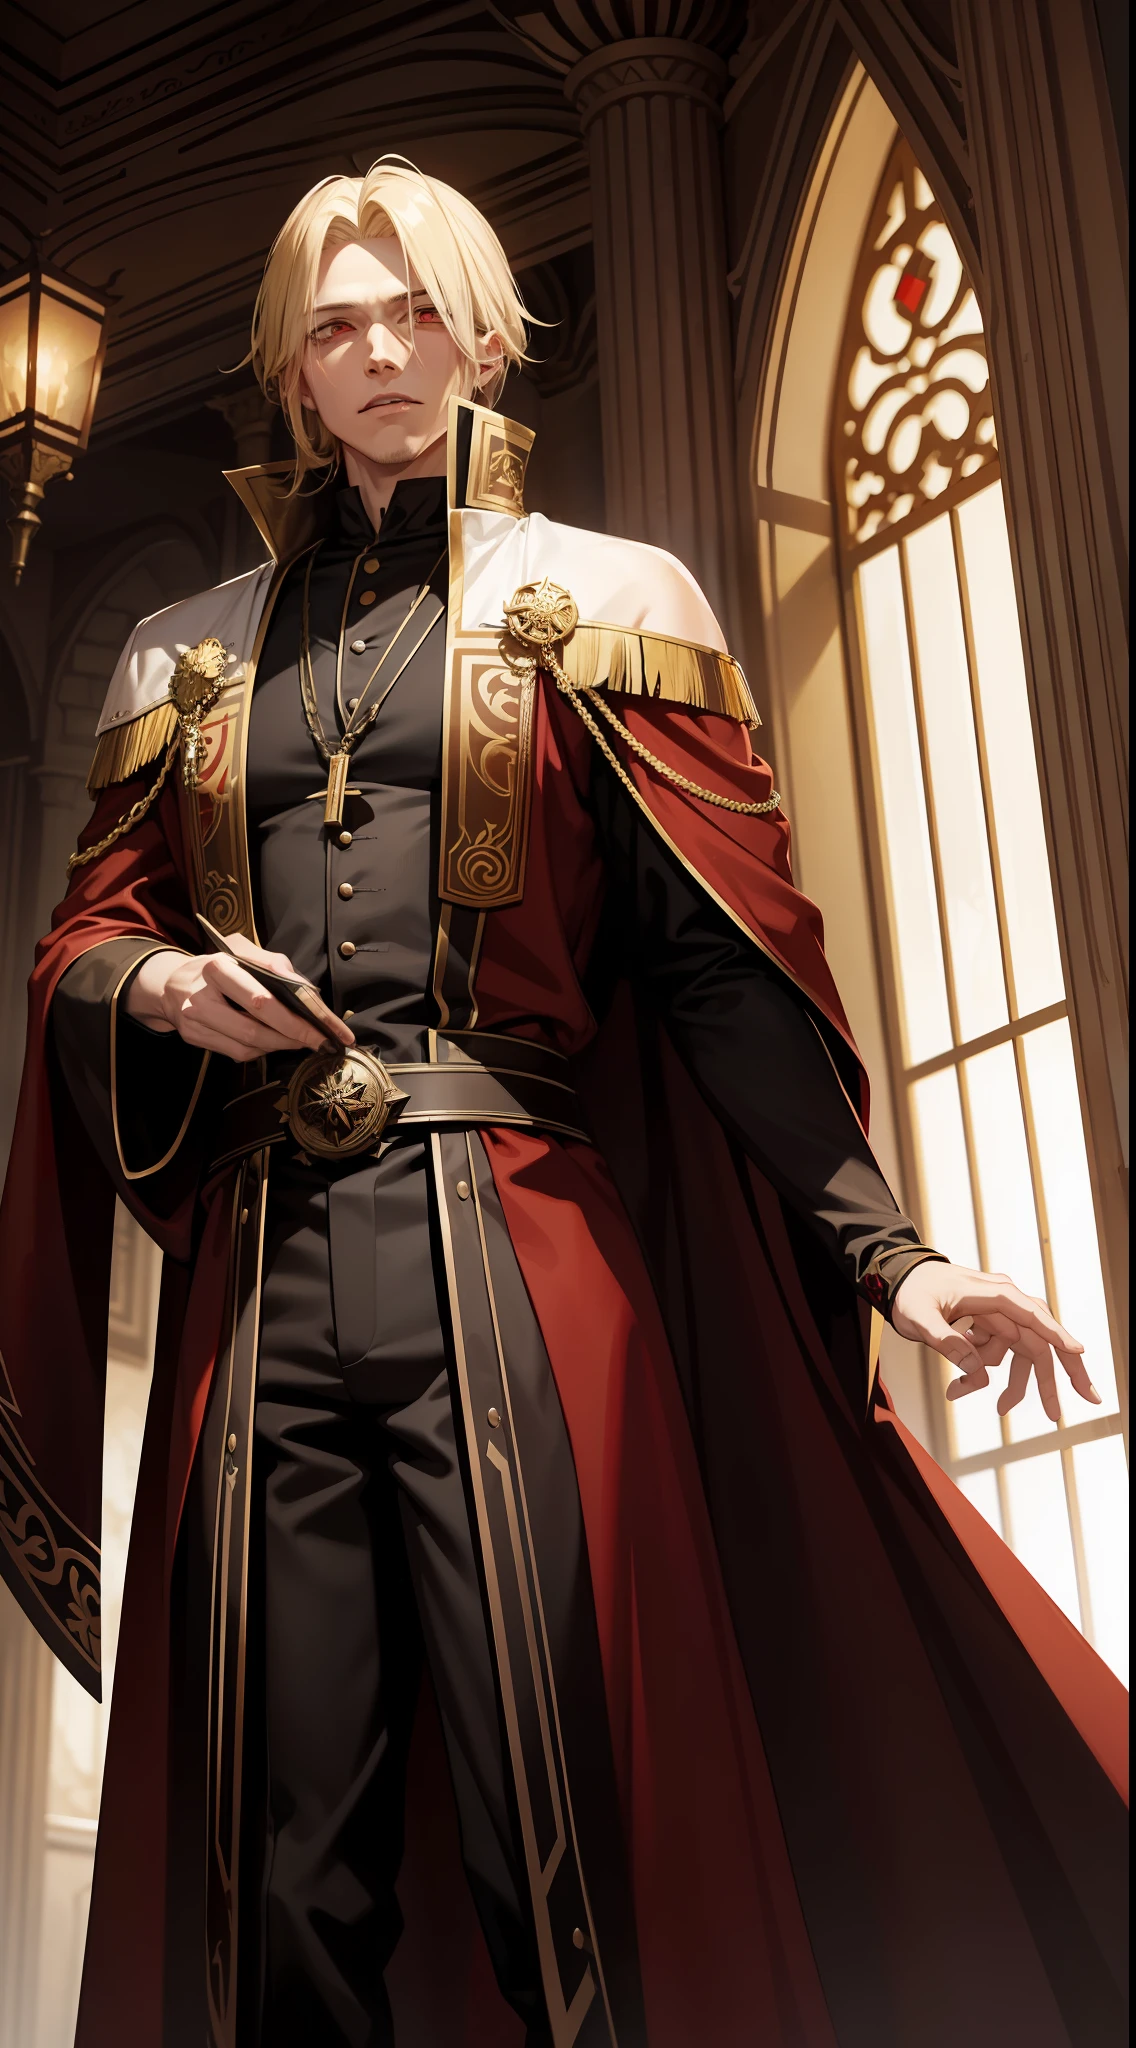 29세 남성, 금발 머리와 붉은 눈을 가진 뱀파이어 왕, 그는 갈색 가운을 입고 있다